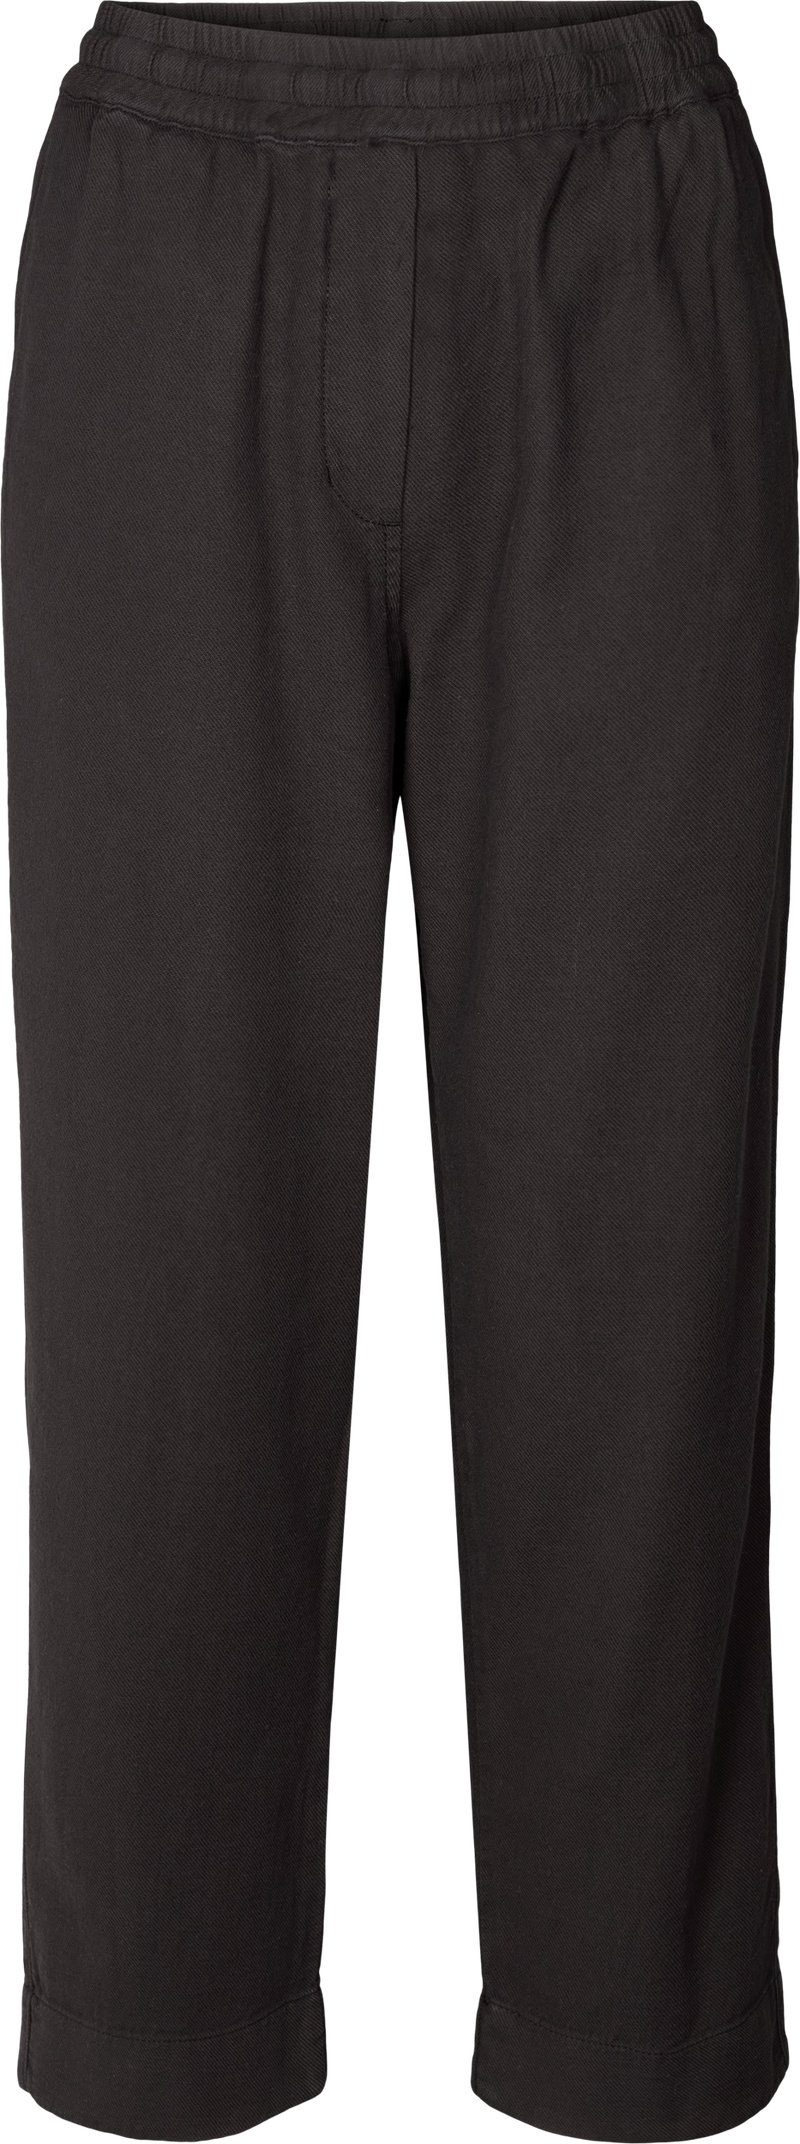 GAI+LISVA Alice Cotton Pant Pants & Shorts 650 Black